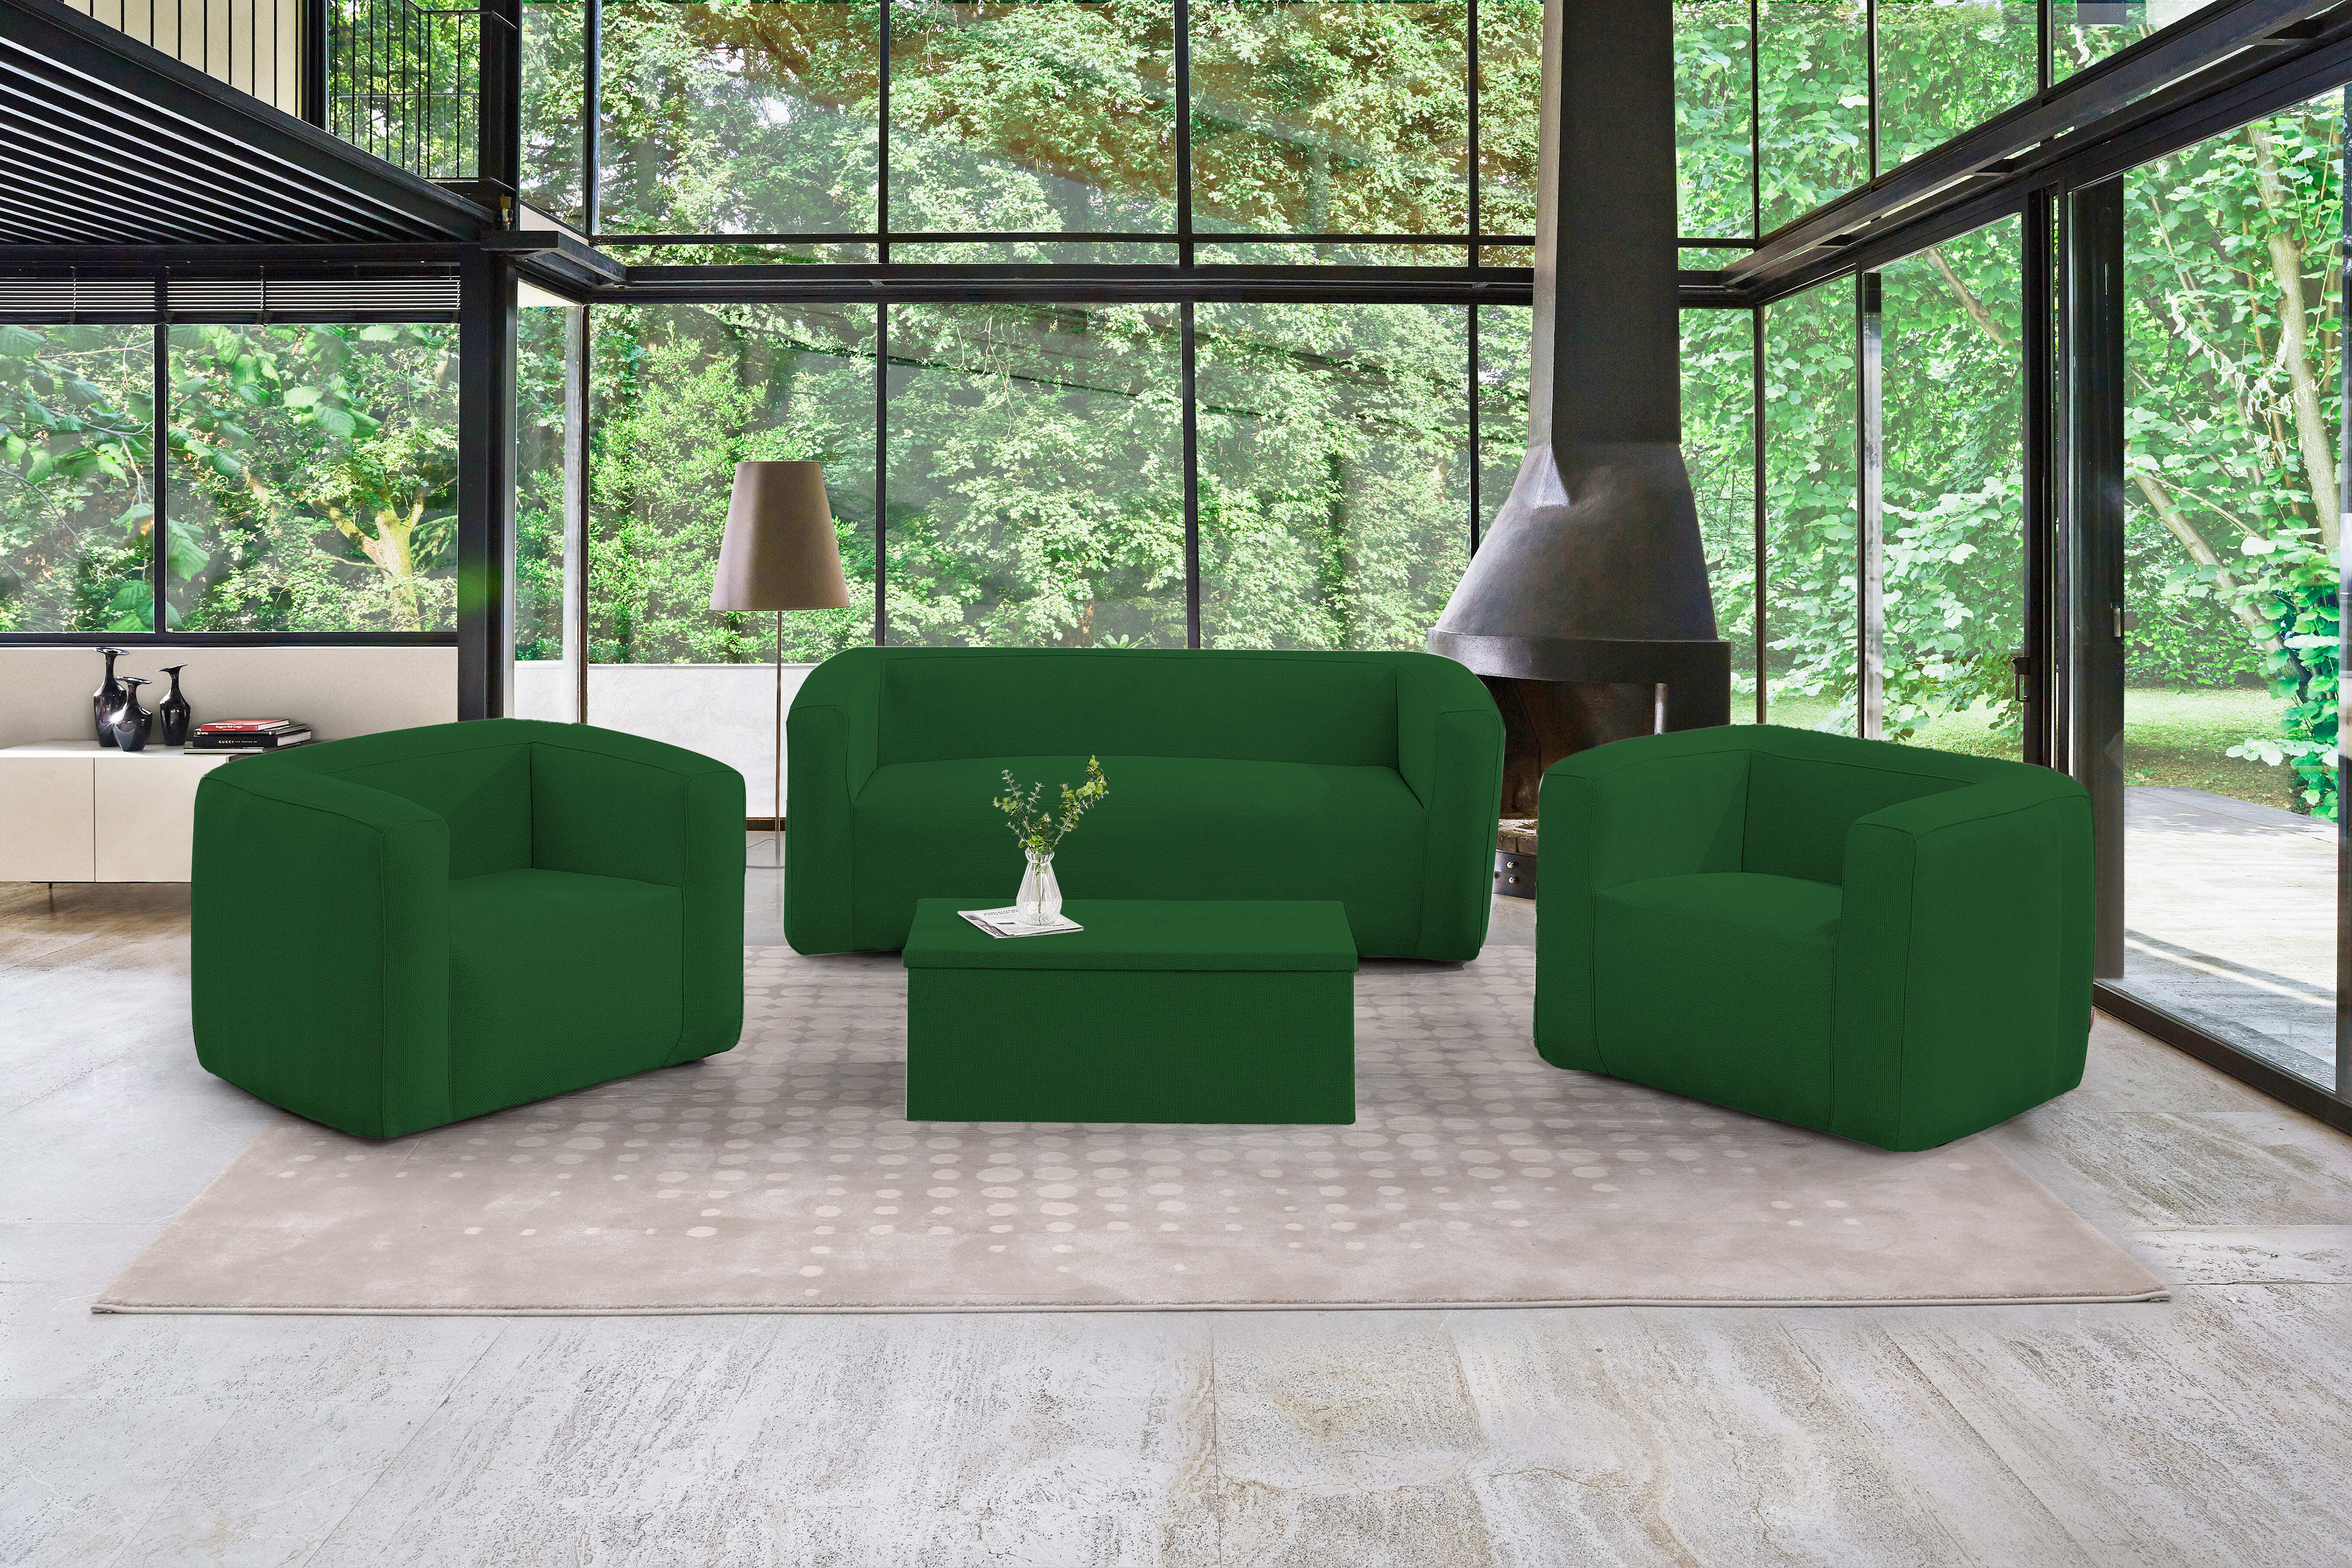 Set de salon gonflable complet Terracotta - Intérieur et extérieur - Couleur Vert